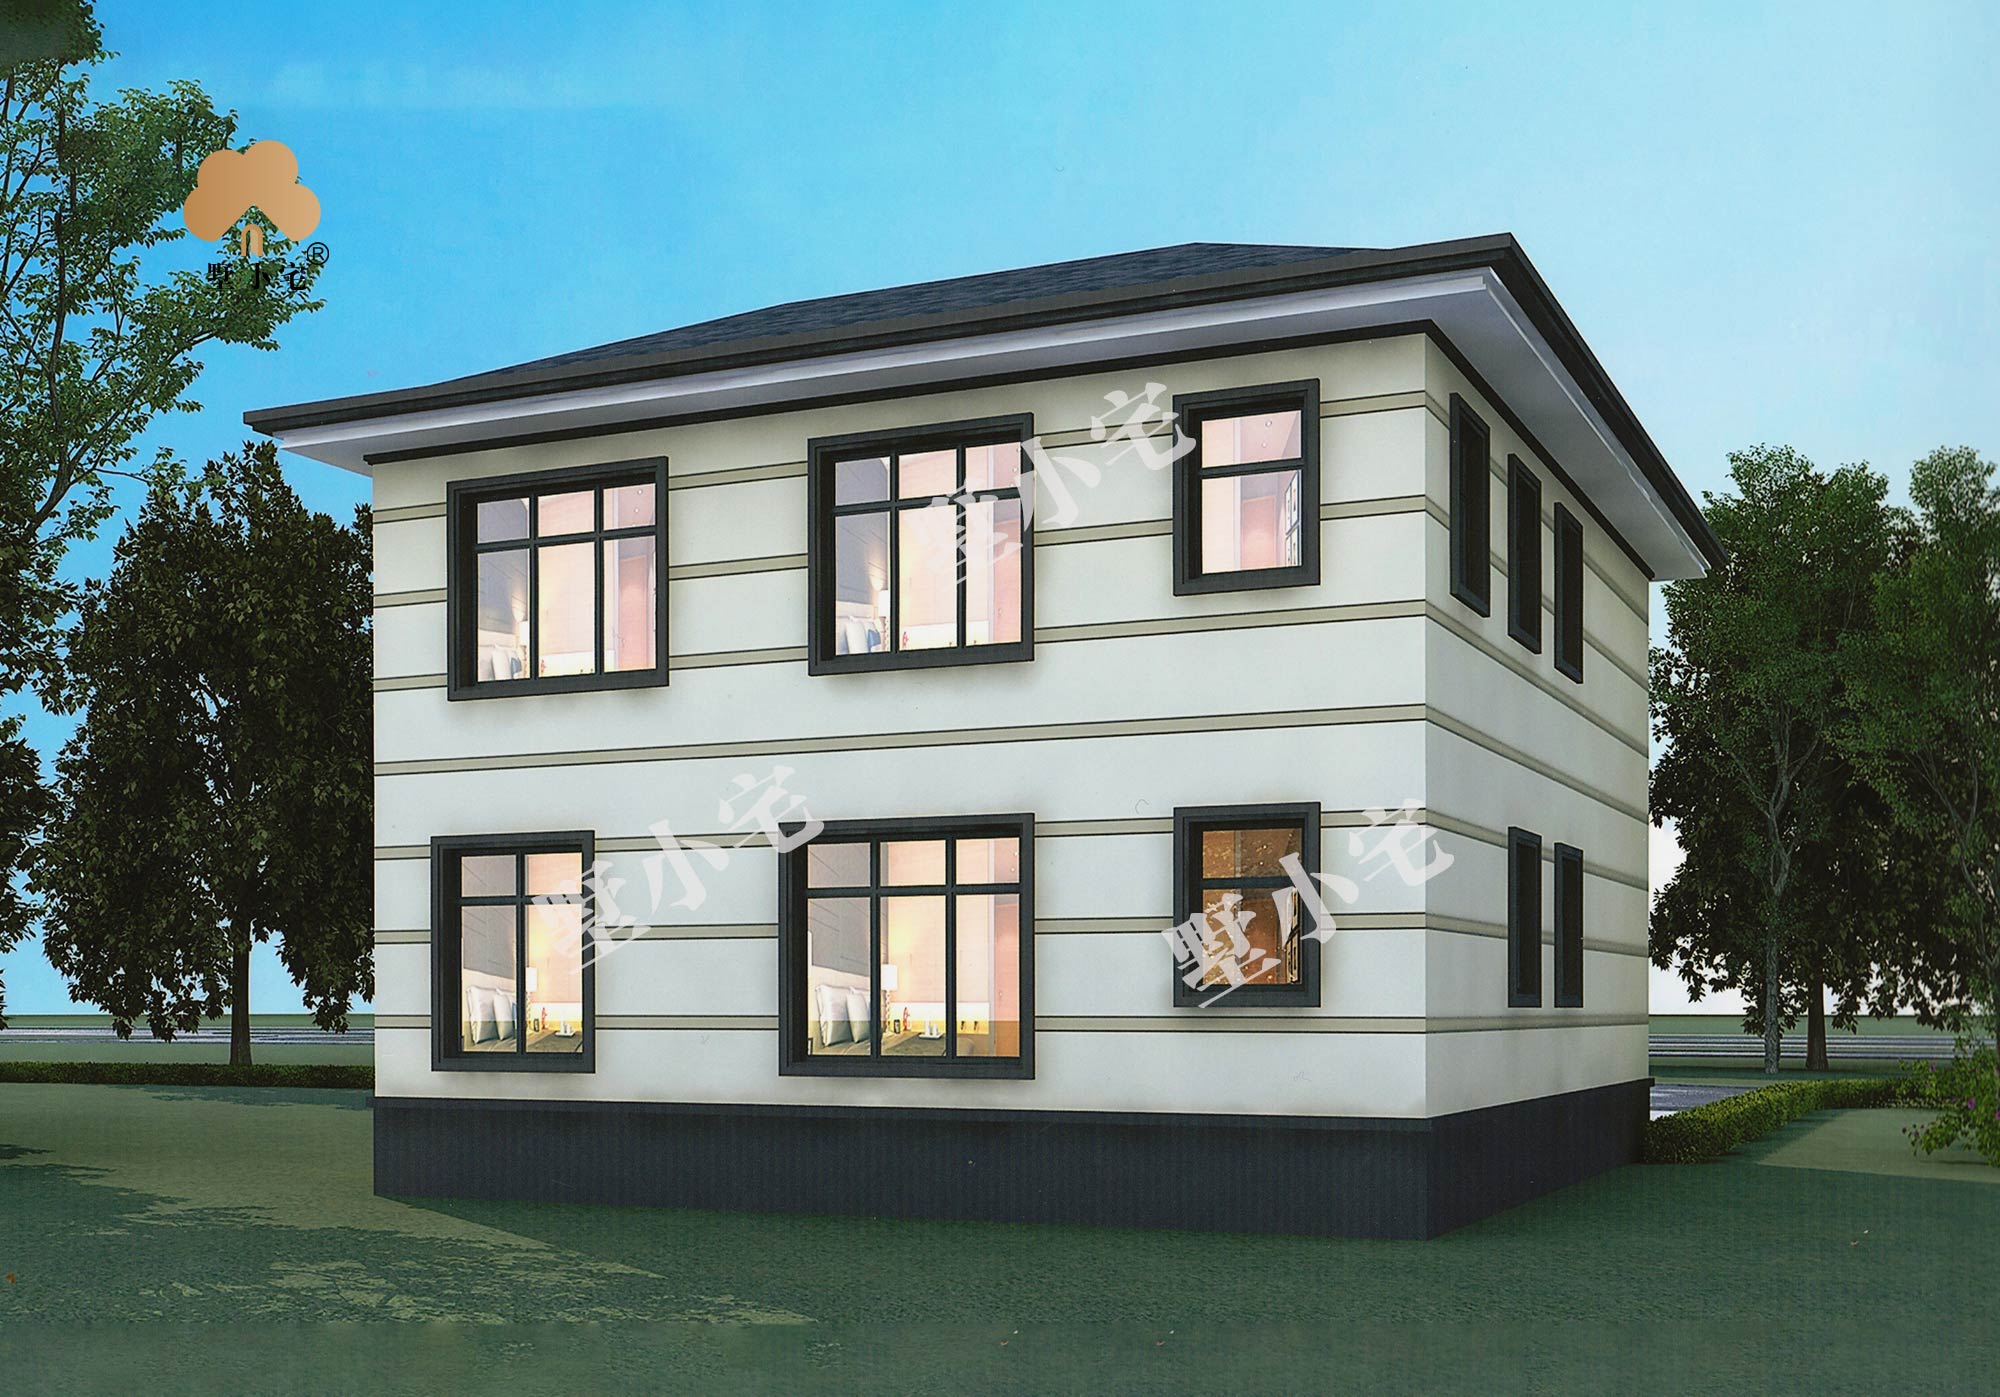 B864农村两层新中式自建房屋设计图，20万就能建的小别墅，带露台阳光房10.14×12.54